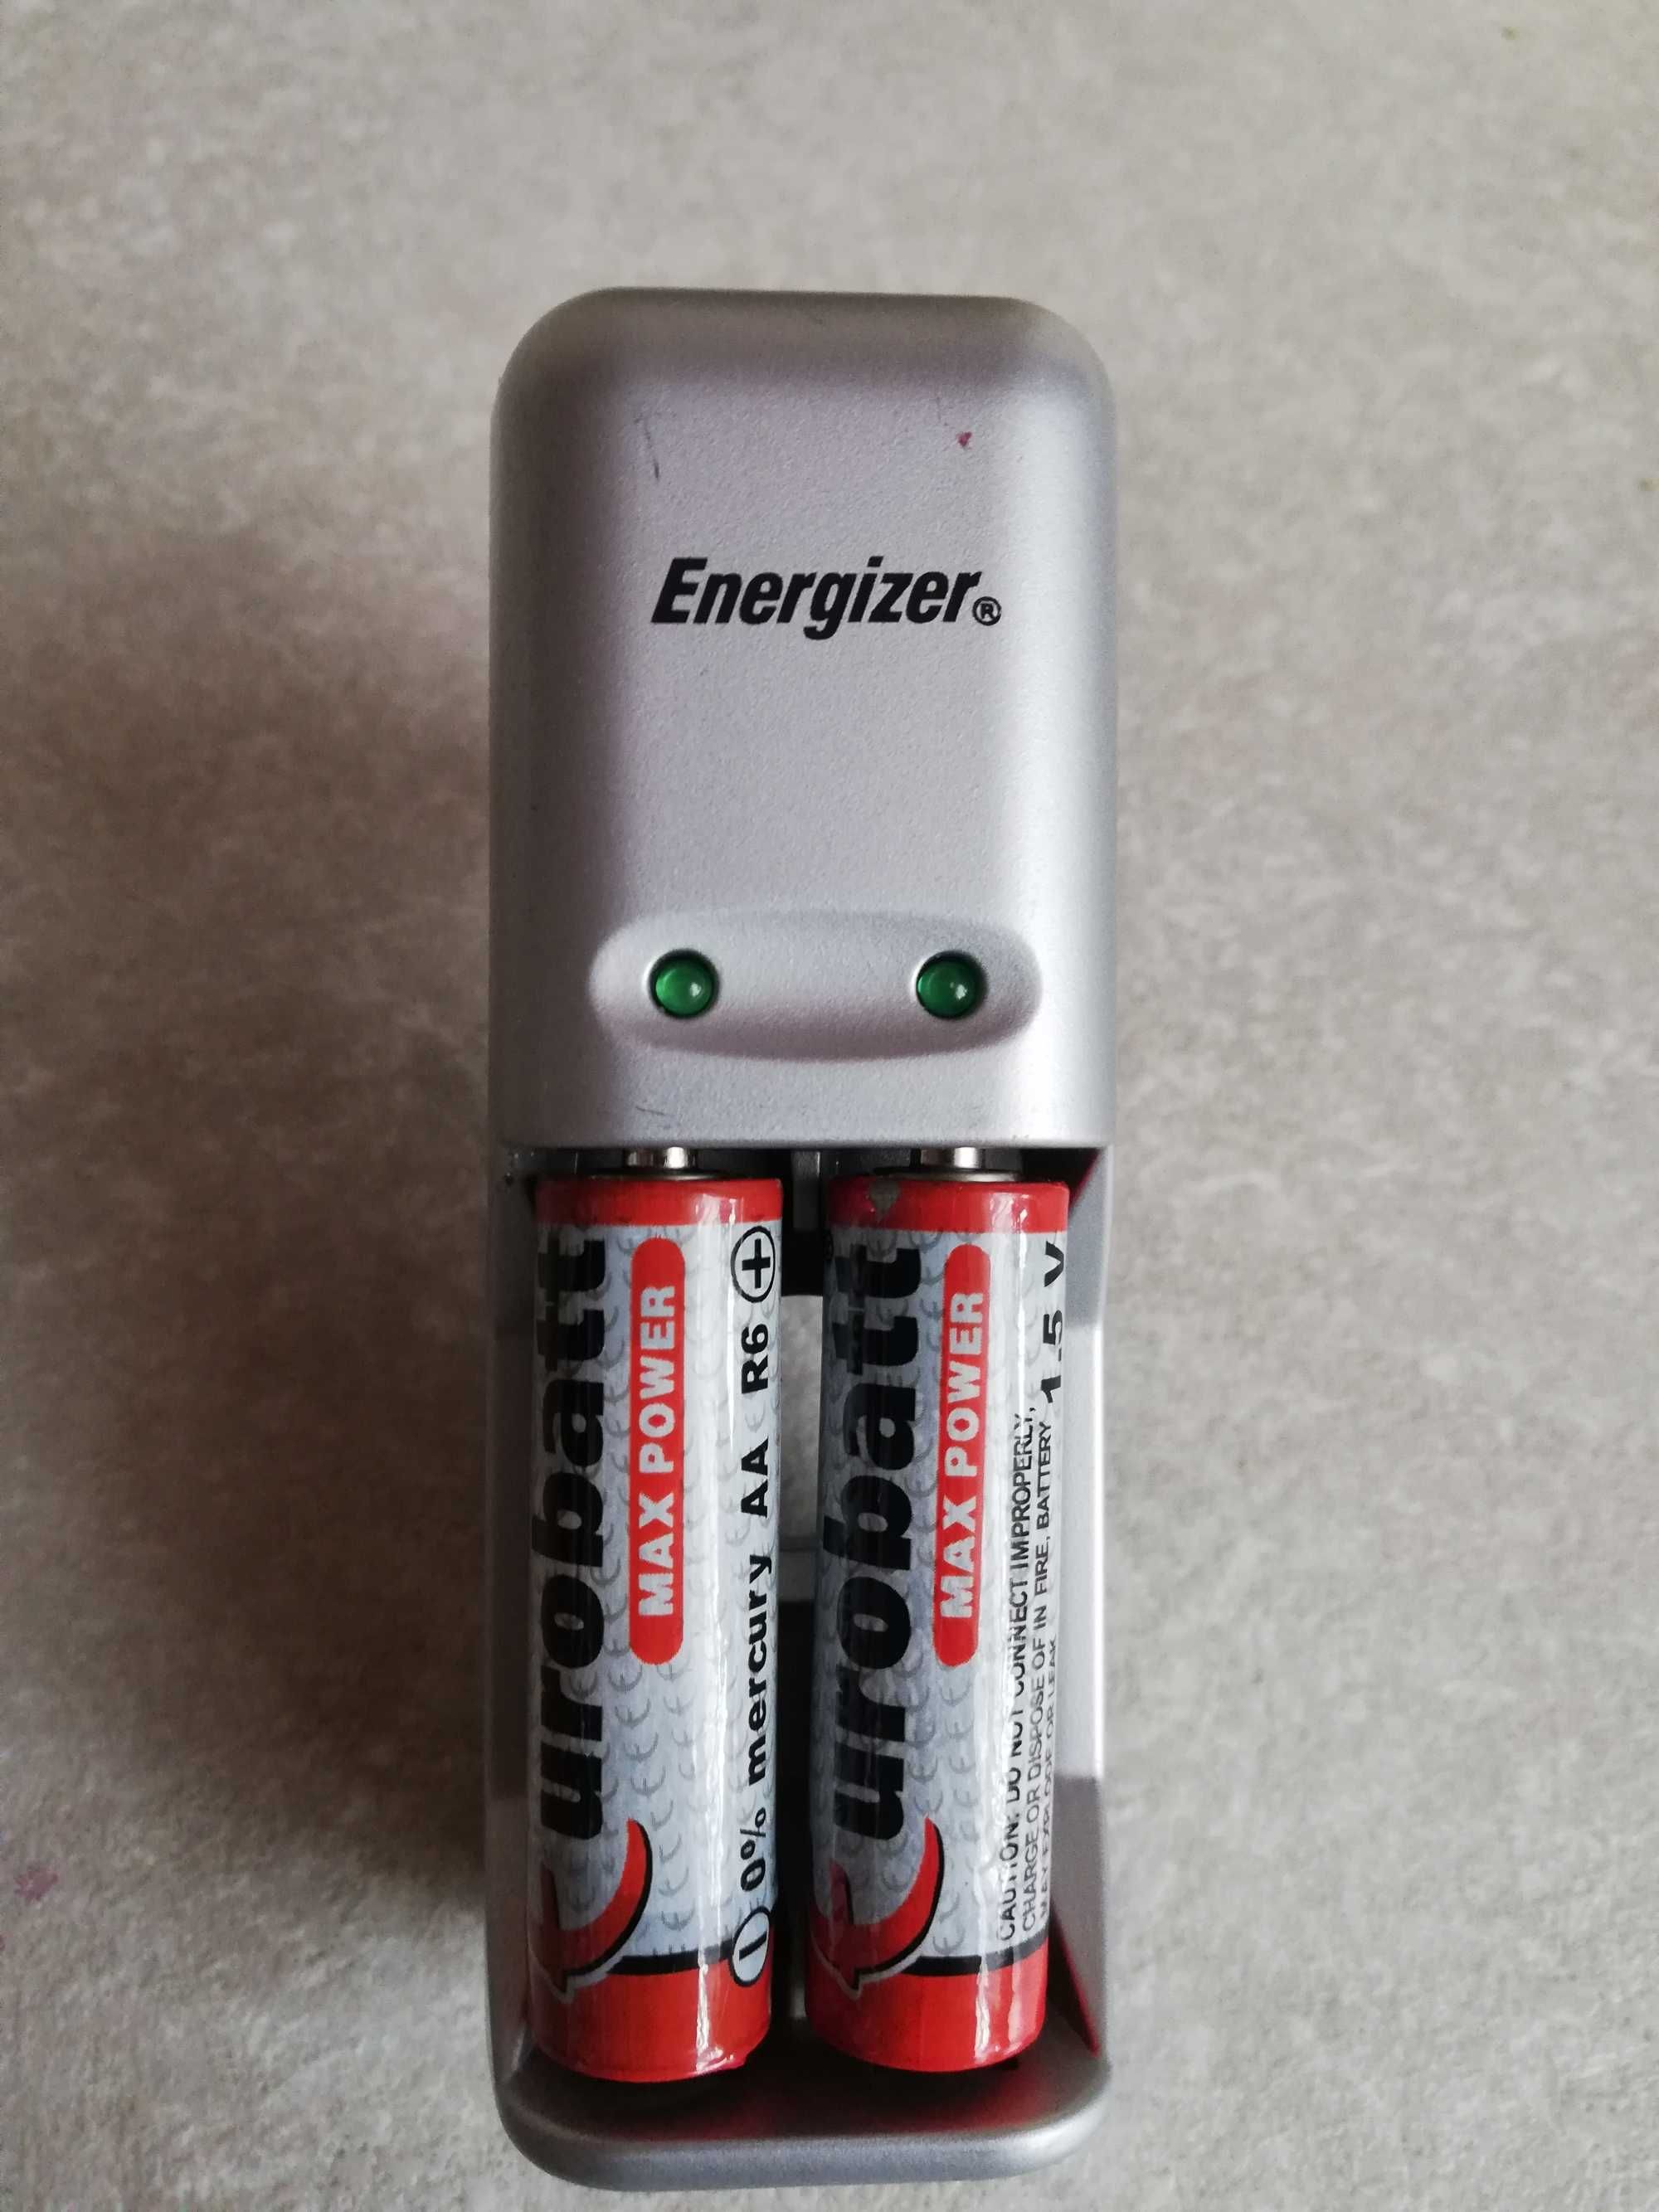 Energizer-ładowarka do akumulatorków/baterii, typ:CH2PC-EU